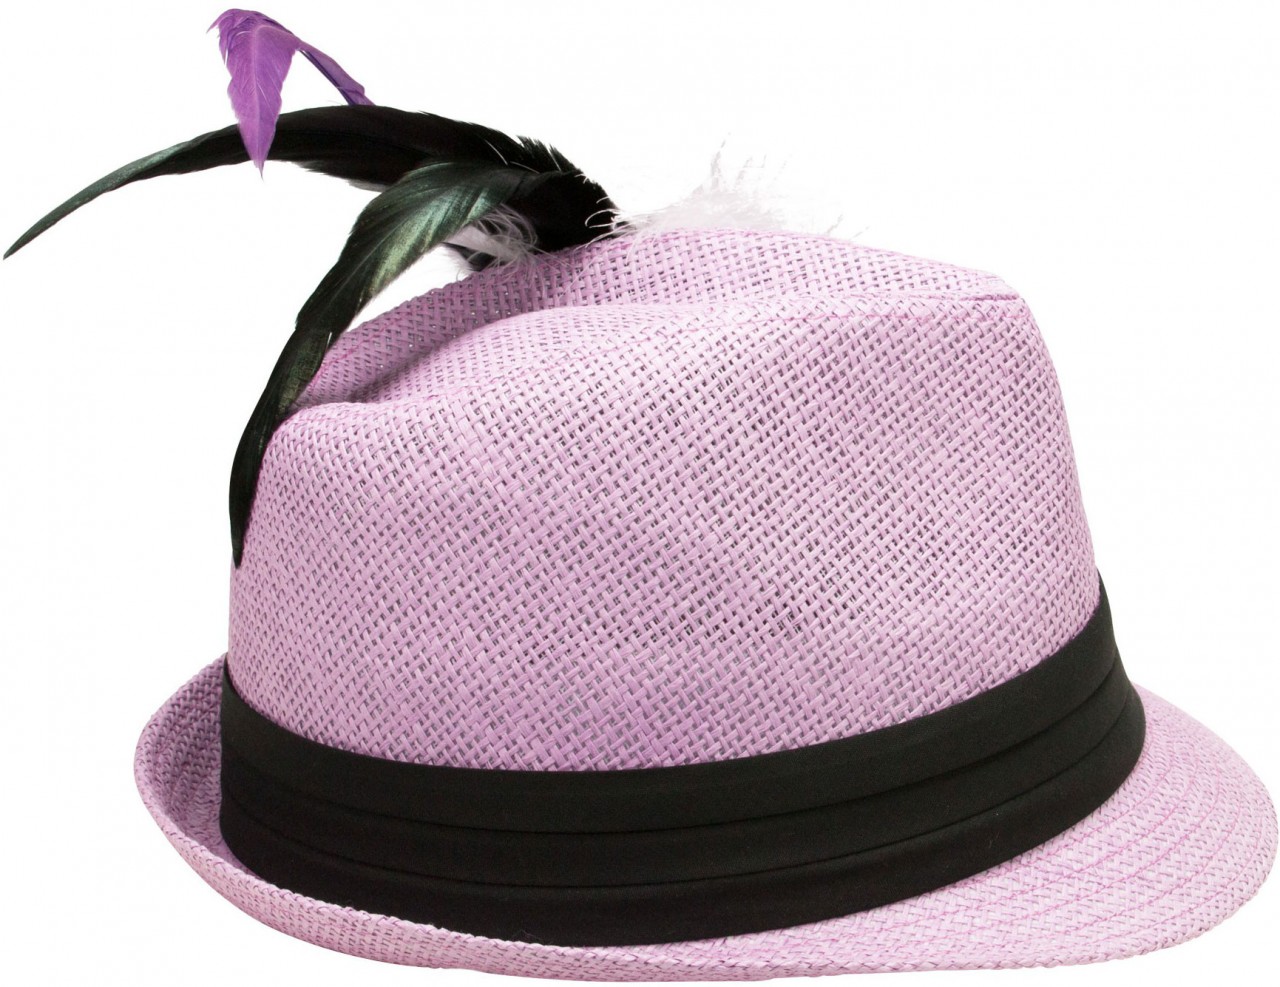 Tradycyjny liliowy słomkowy kapelusz